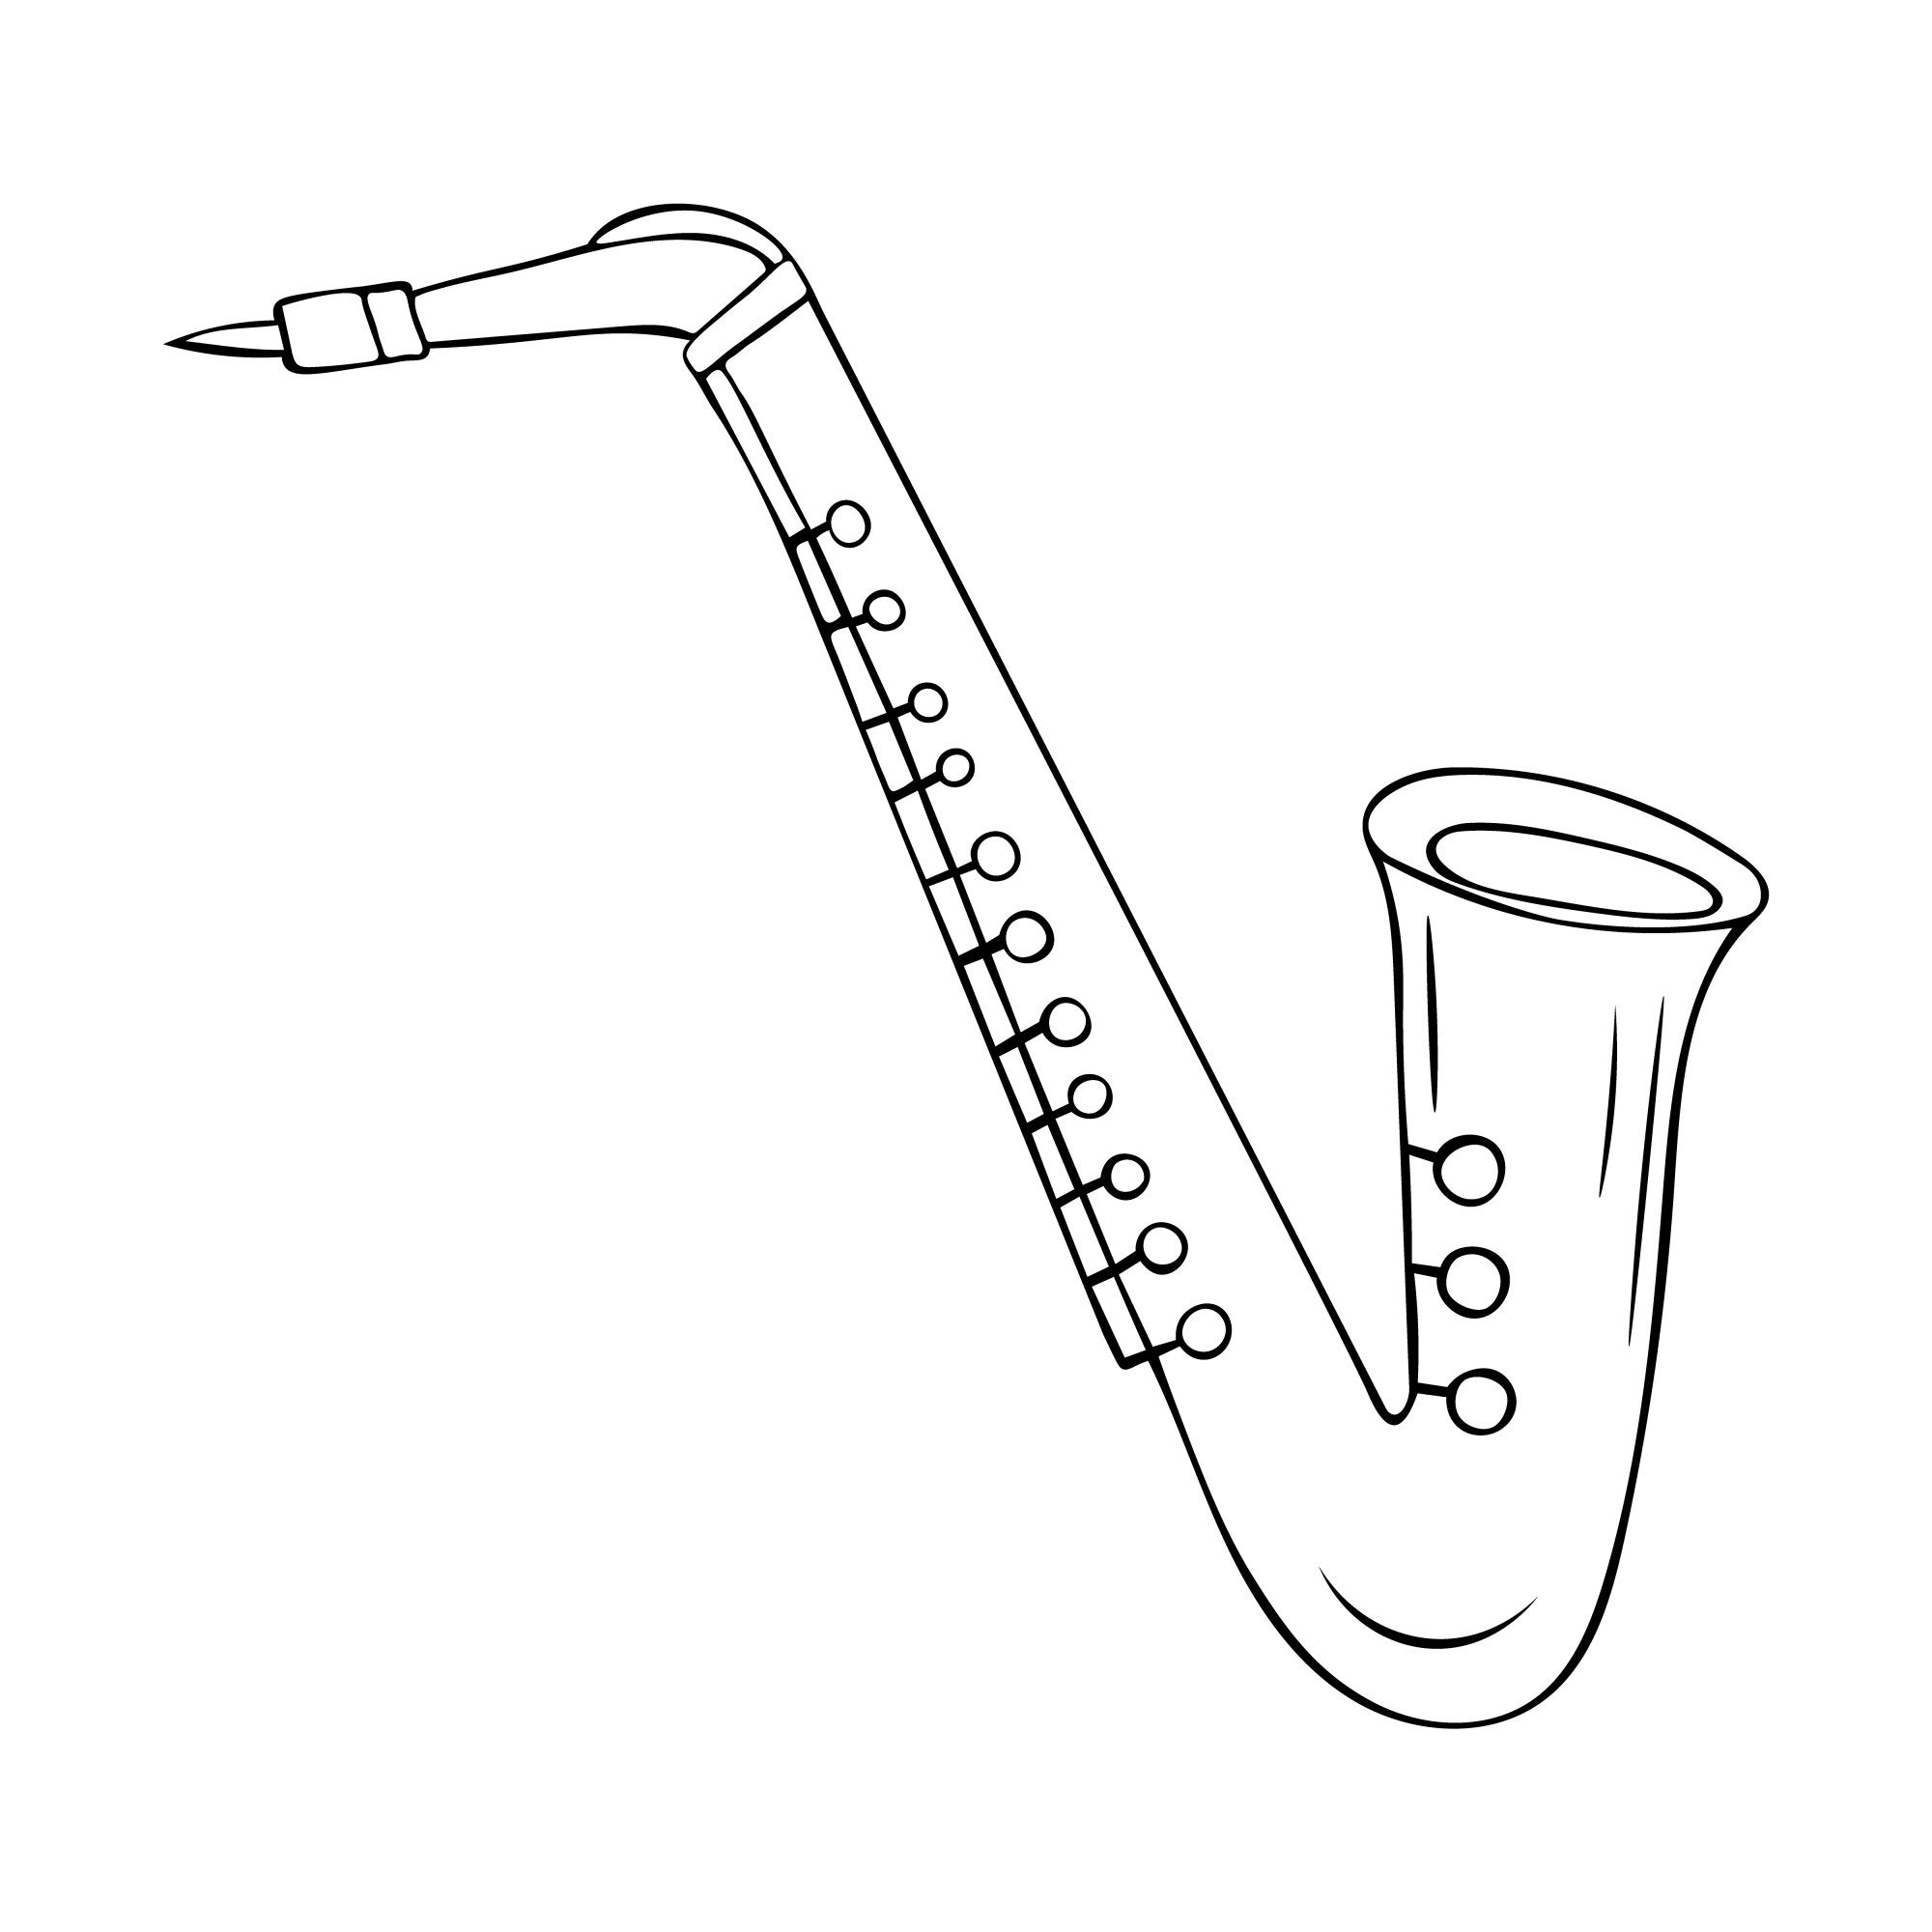 Раскраска для детей: музыкальная игрушка саксофон